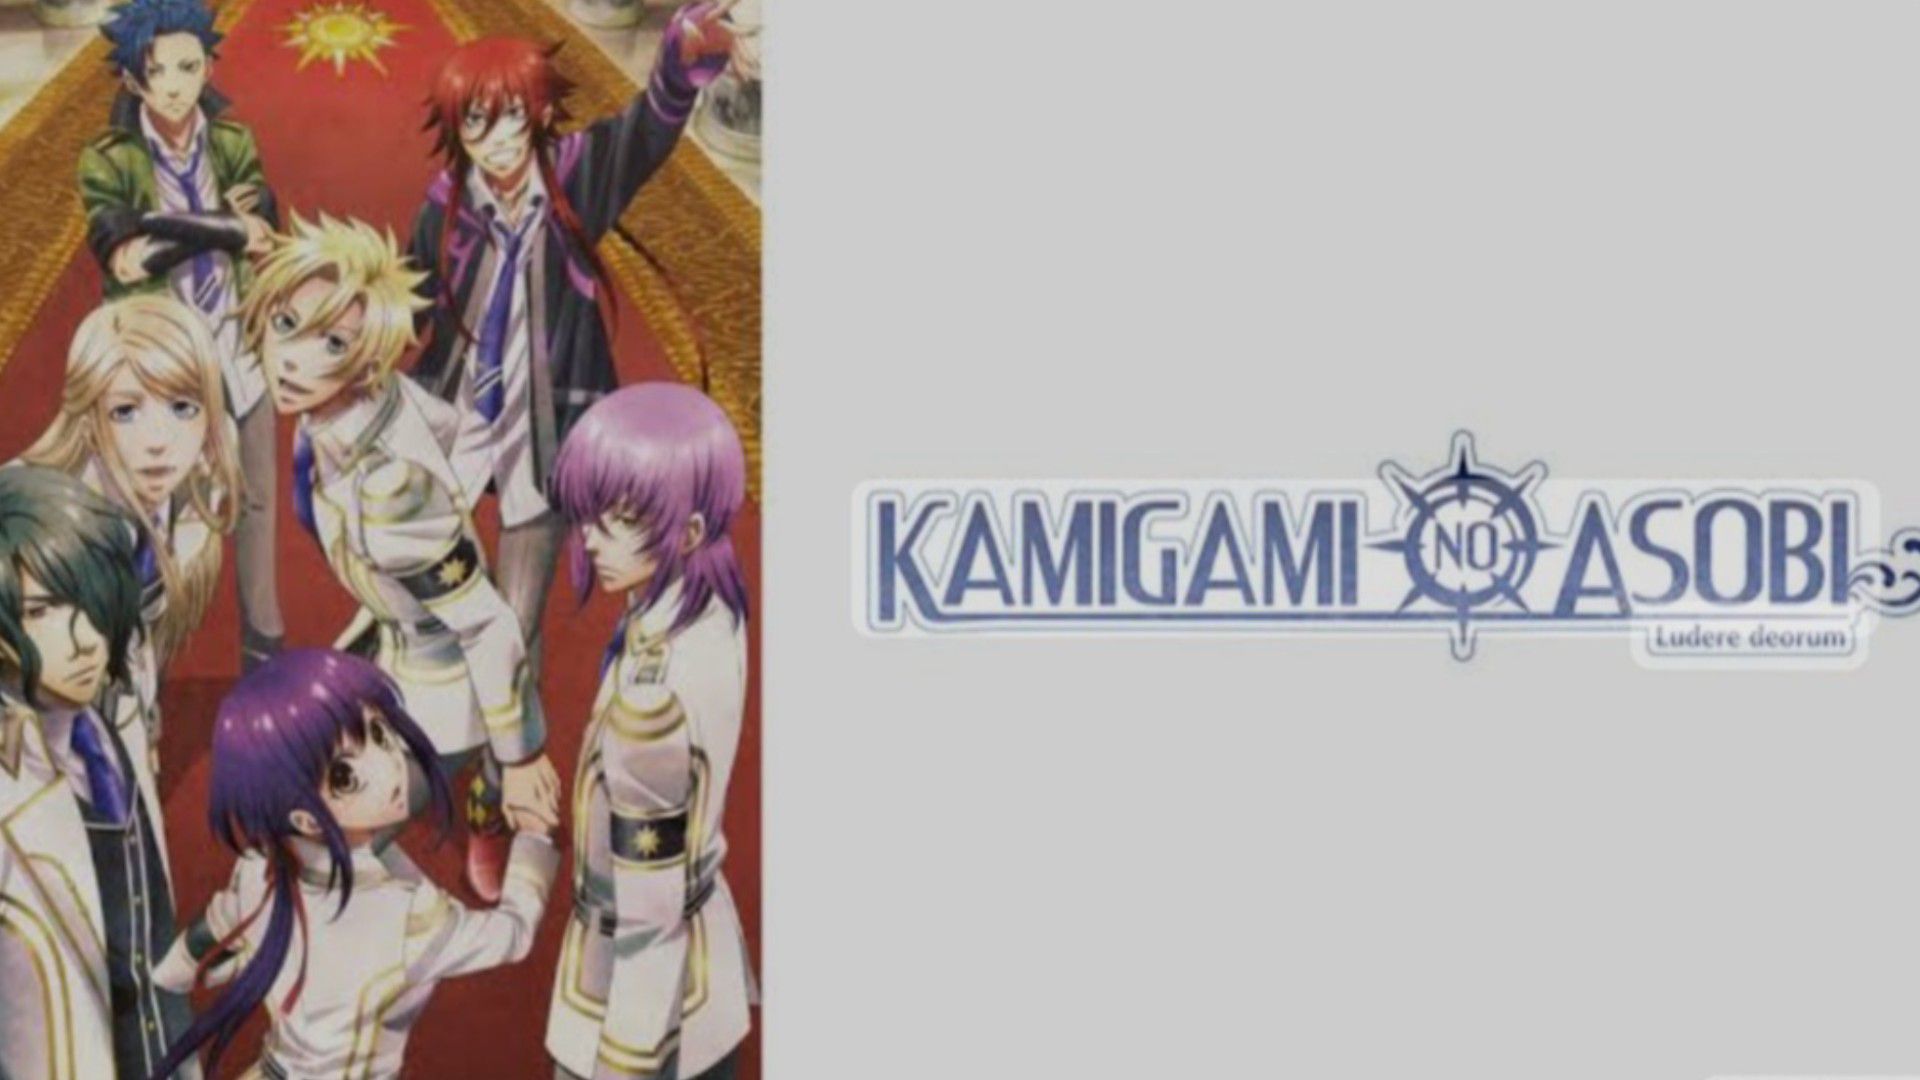 How to watch and stream Kamigami no Asobi (Original Japanese